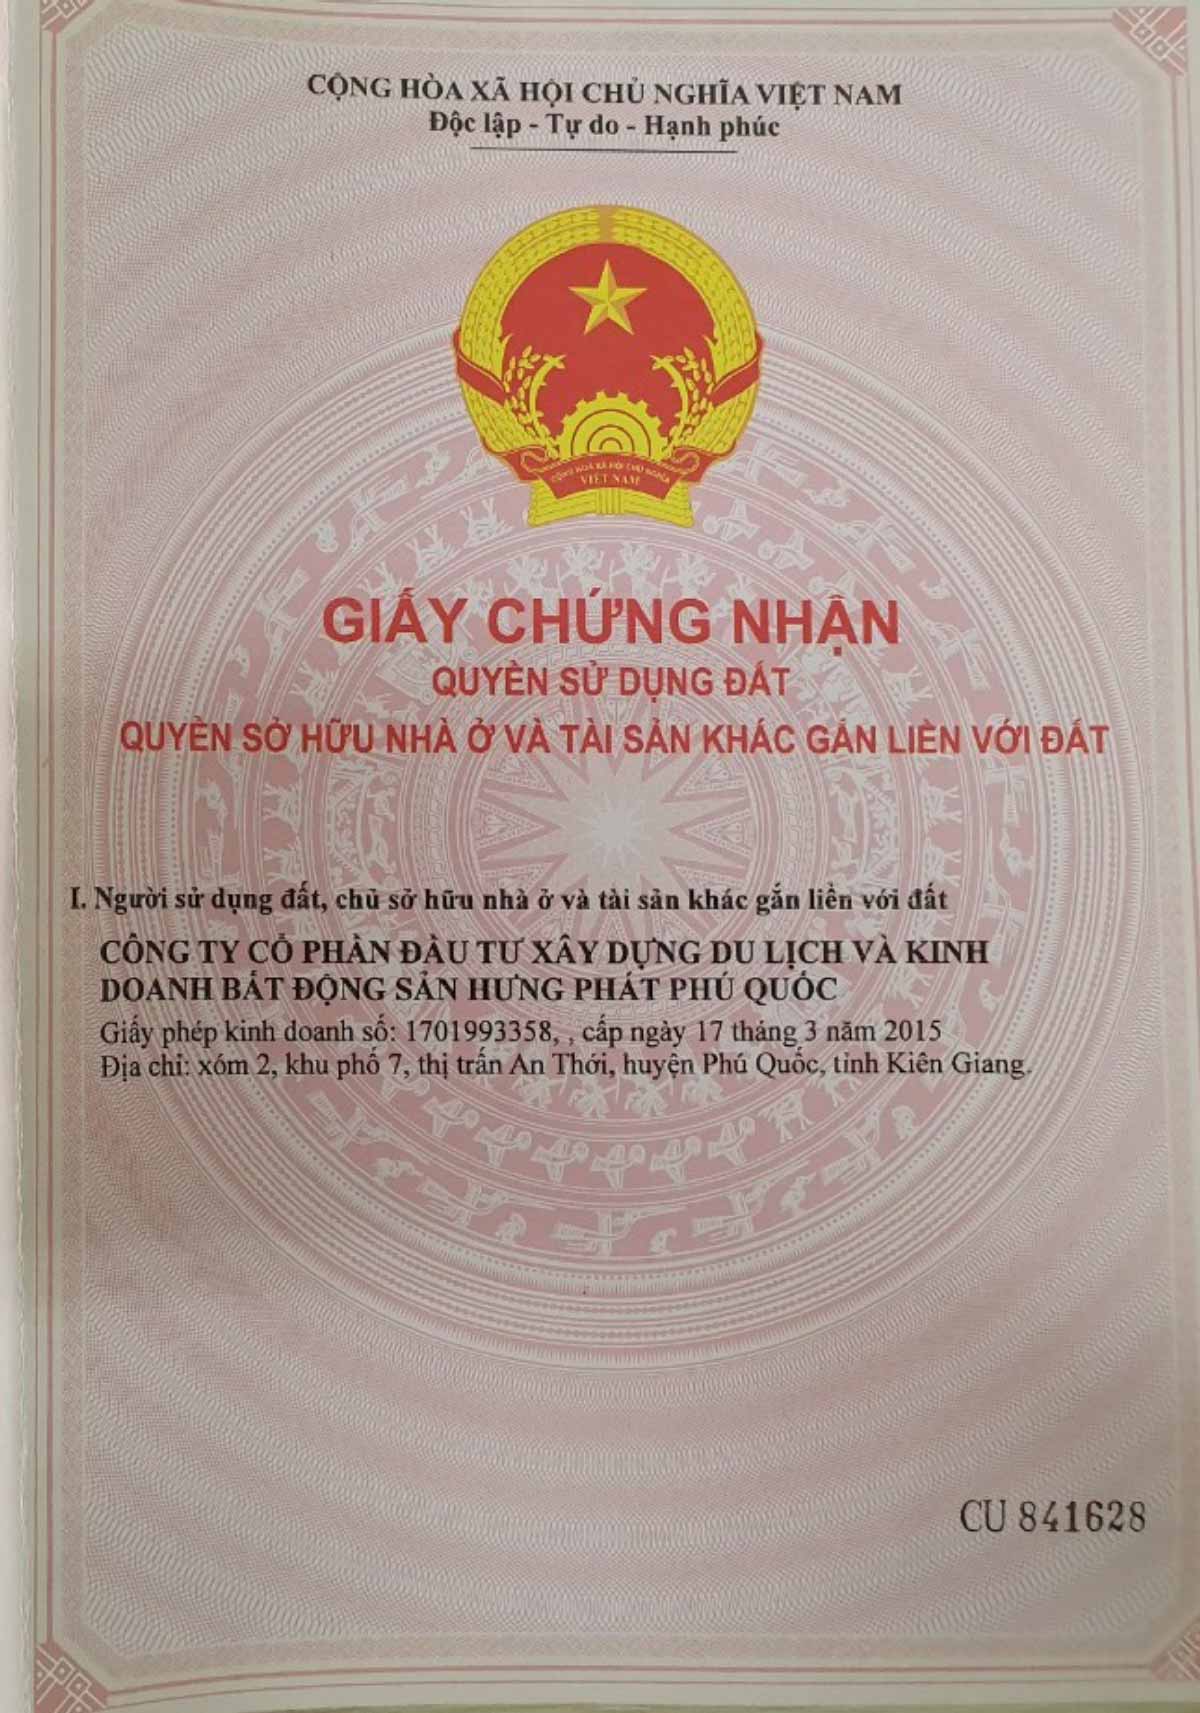 Trang bìa giấy chứng nhận quyền sử dụng đất dự án Meyhomes Capital Phú Quốc